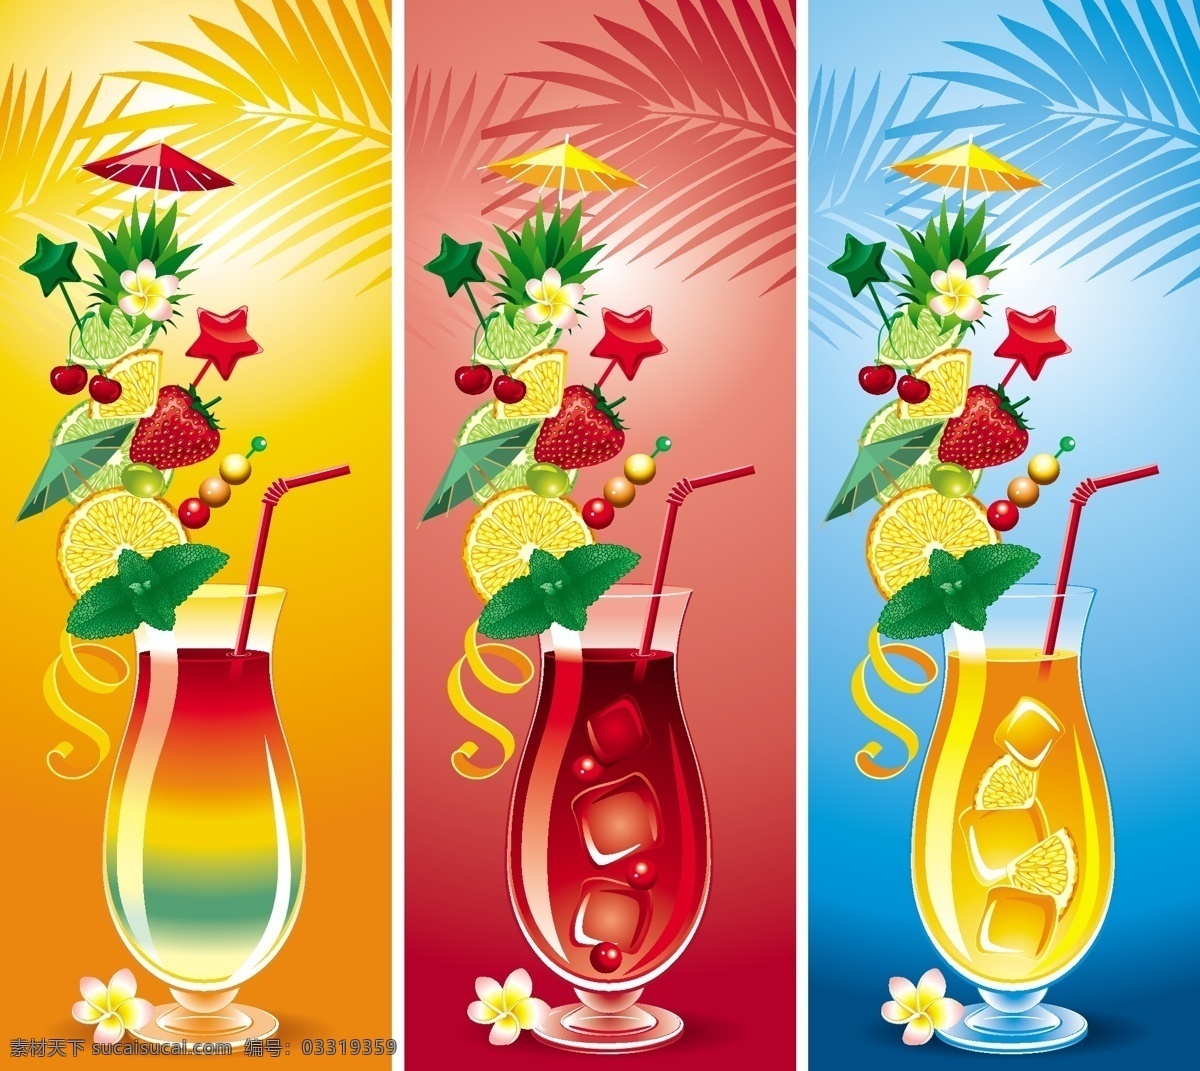 夏日饮品饮料 矢量 夏日饮品 饮料 炫彩果汁 缤纷果汁 矢量图 其他矢量图